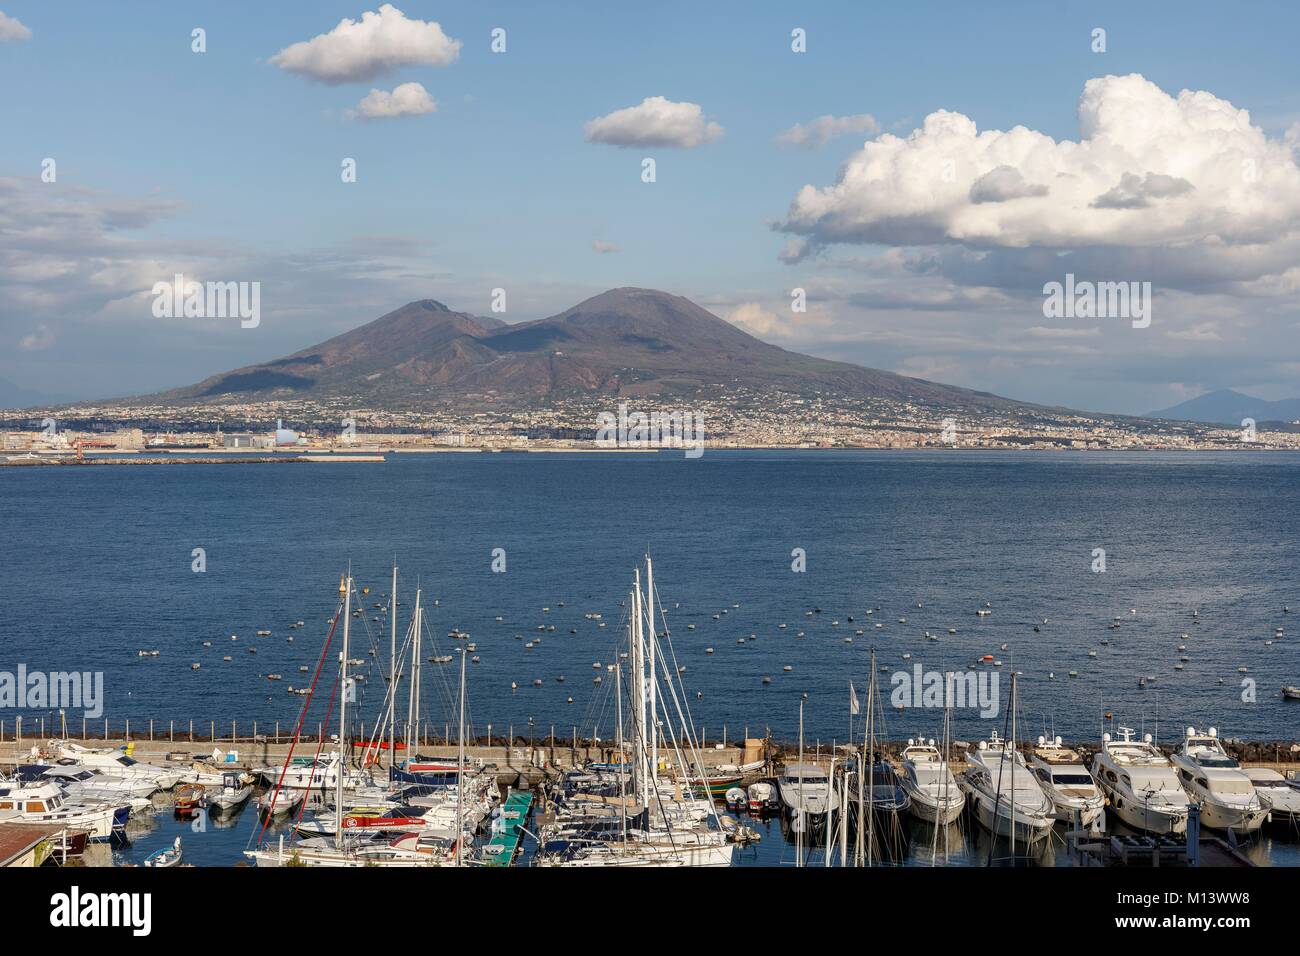 Italien, Kampanien, Neapel, die historische Altstadt zum Weltkulturerbe der UNESCO, die Bucht von Neapel und den Vesuv. Stockfoto